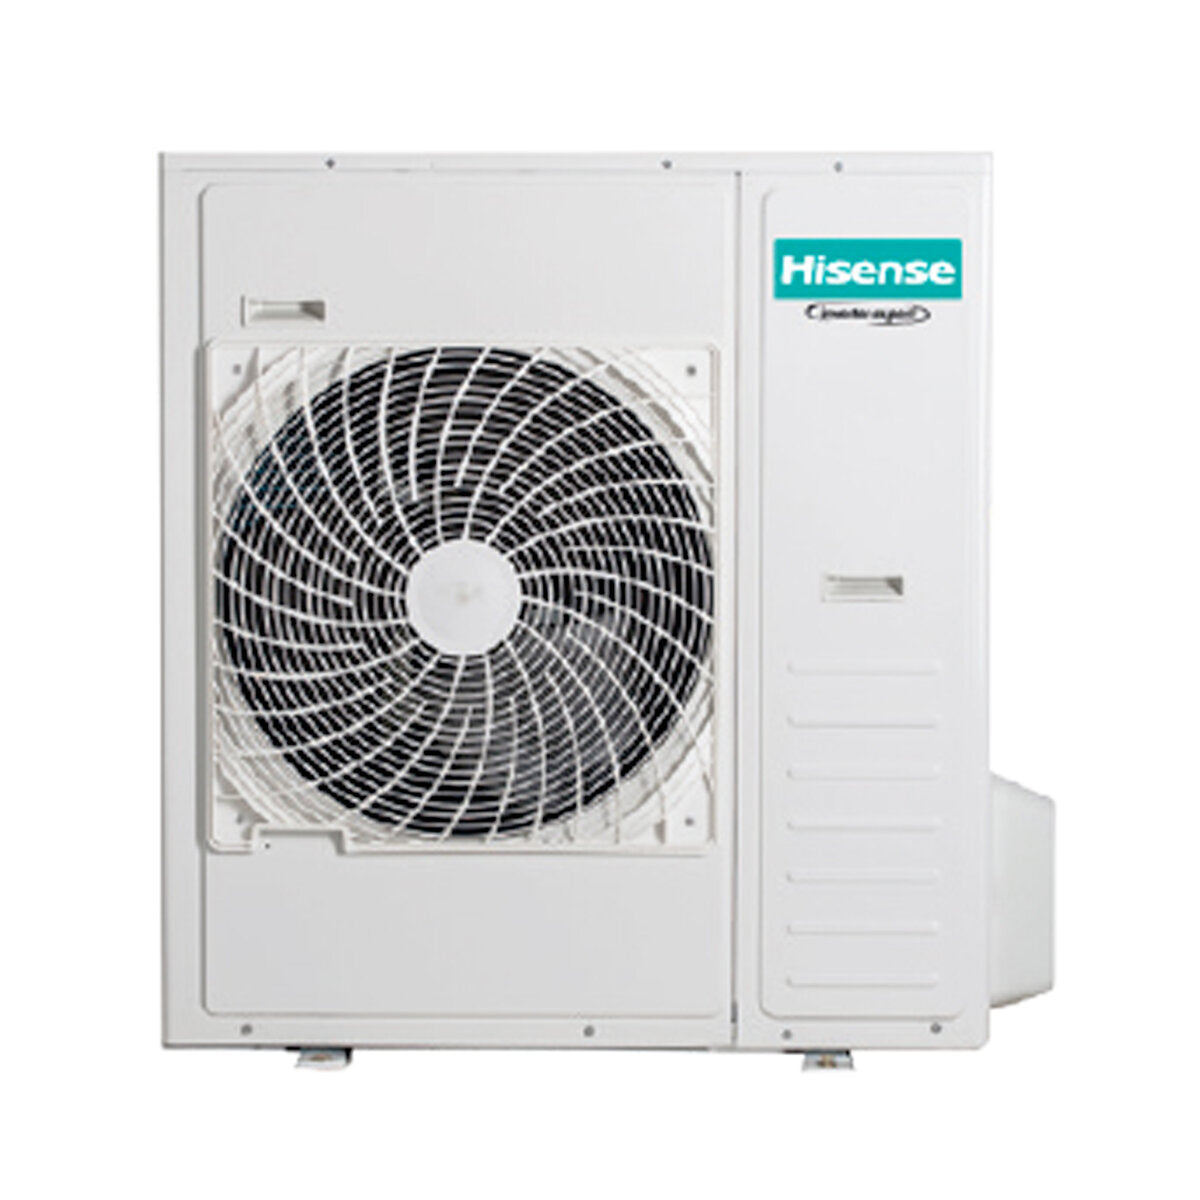 Hisense Hi-Comfort climatiseur split quadri 9000 + 9000 + 9000 + 24000 BTU wifi inverter unité extérieure 12,5 kW